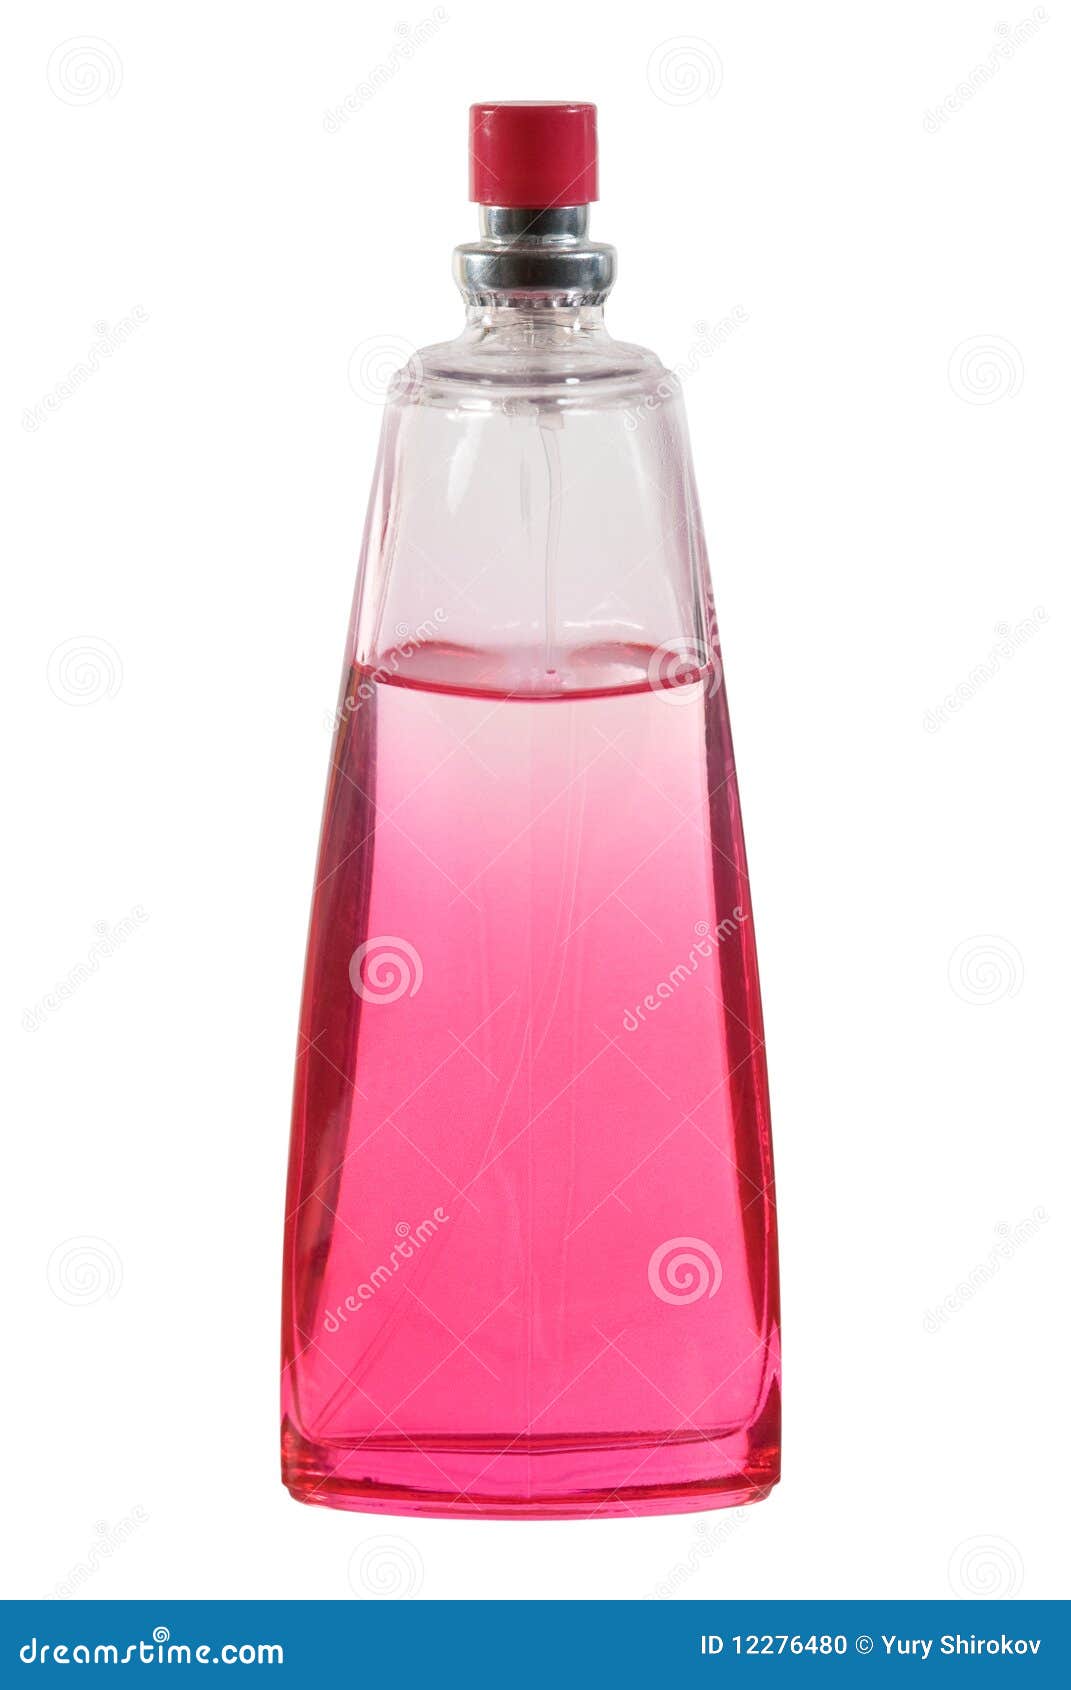 Духи с розовой крышкой. Духи розовая бутылка. Розовая бутылочка с крышкой. Парфюм розовая бутылочка. Туалетная вода с розовым колпачком.